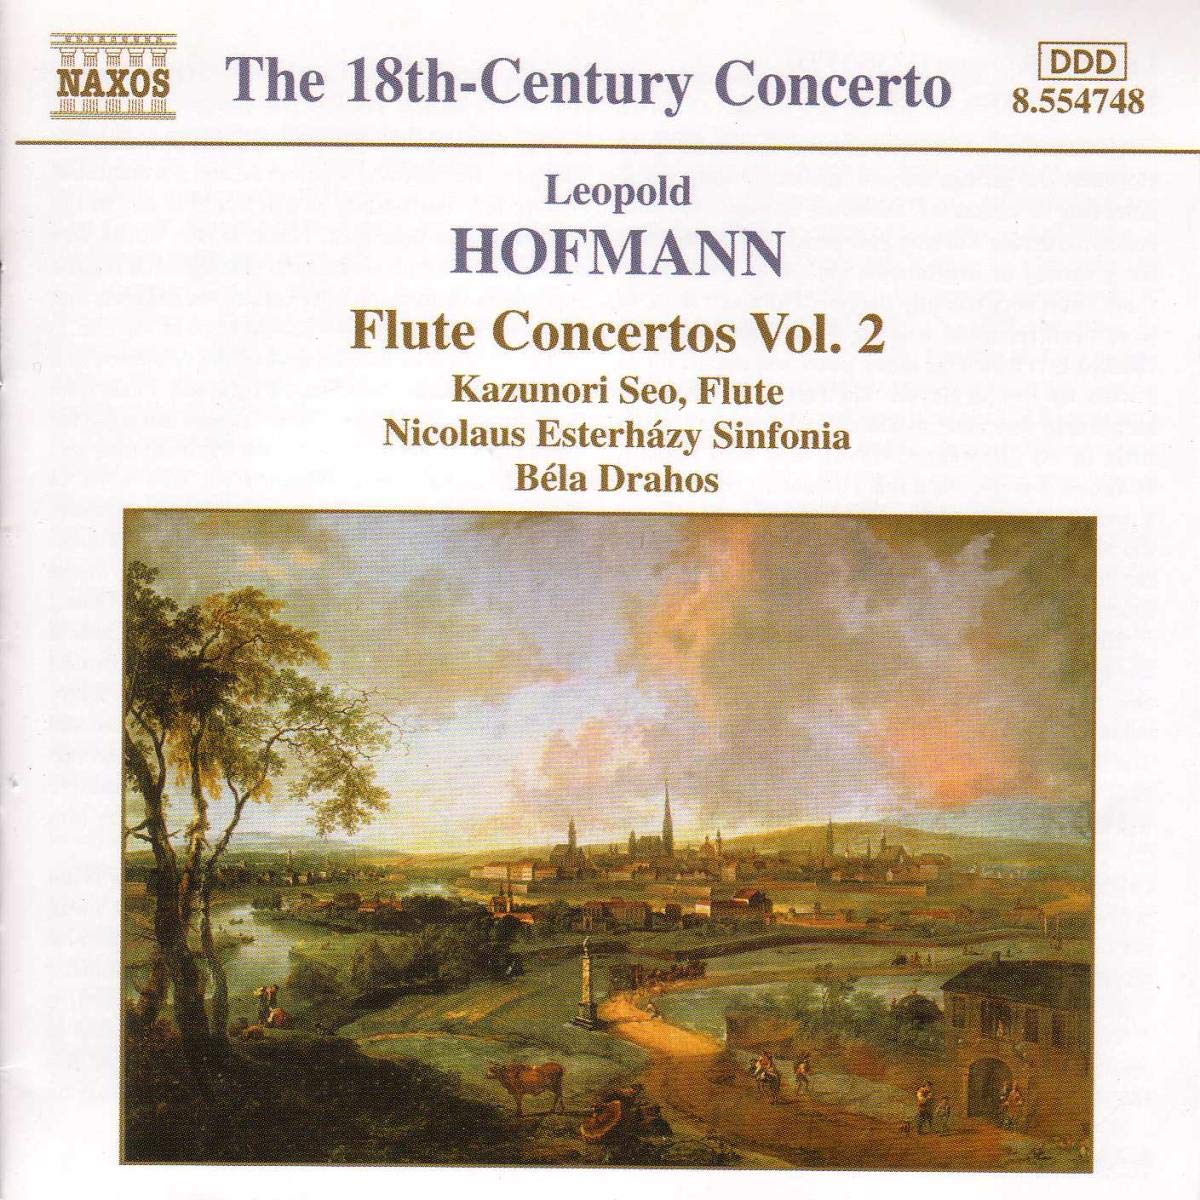 HOFMANN: Flute Concertos vol. 2